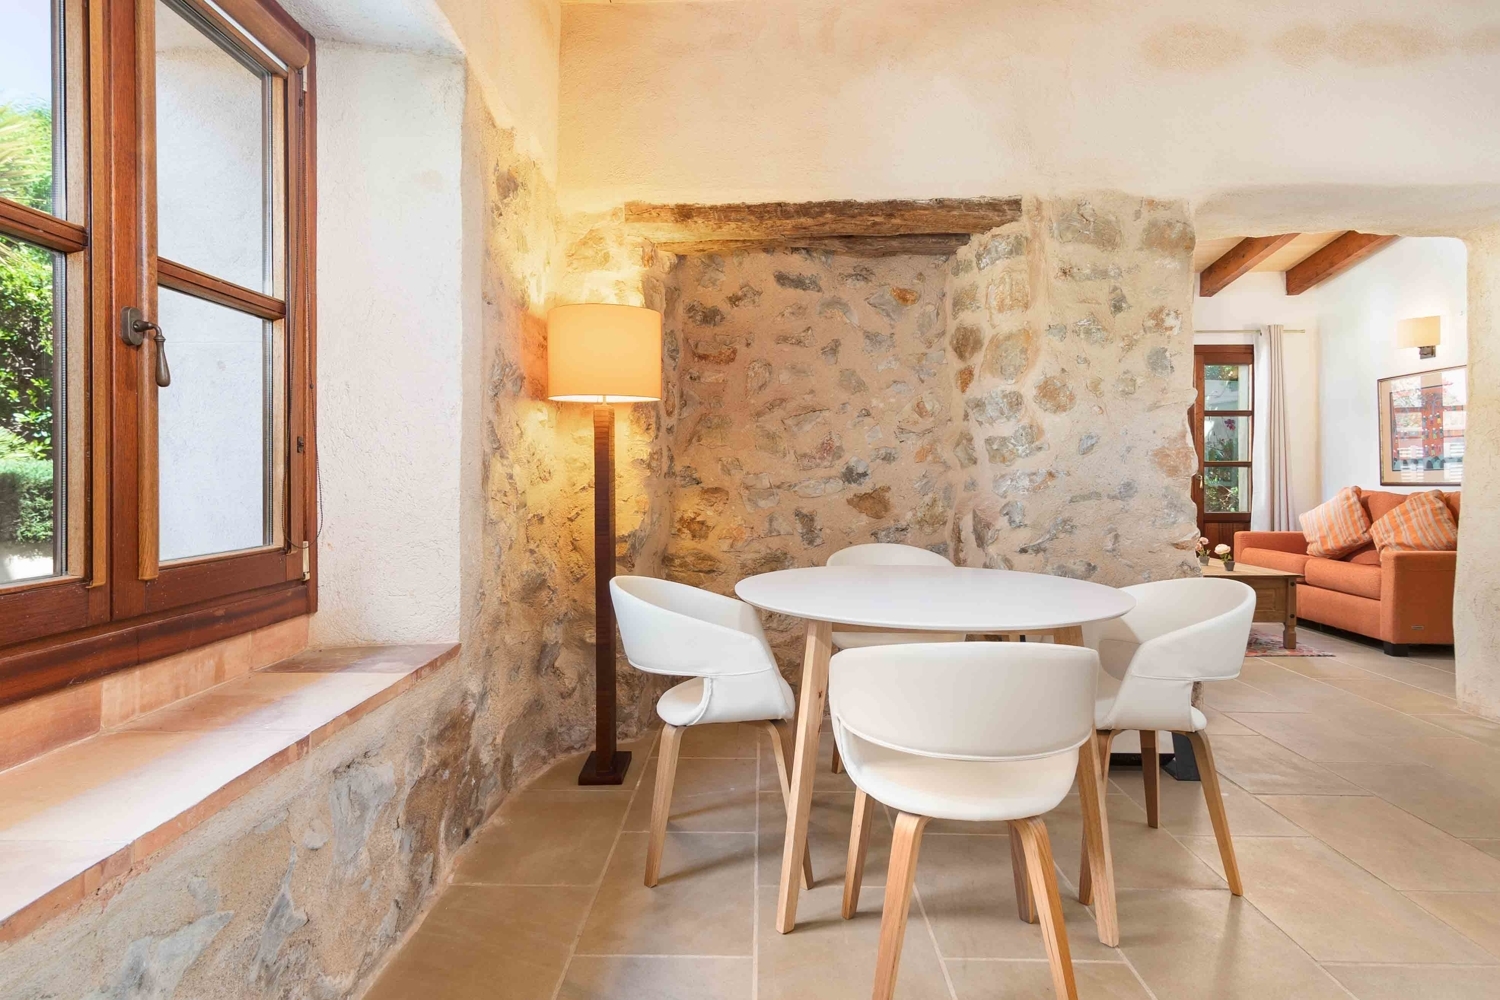 Casa de piedra de estilo mallorquín situada en Es Capdella